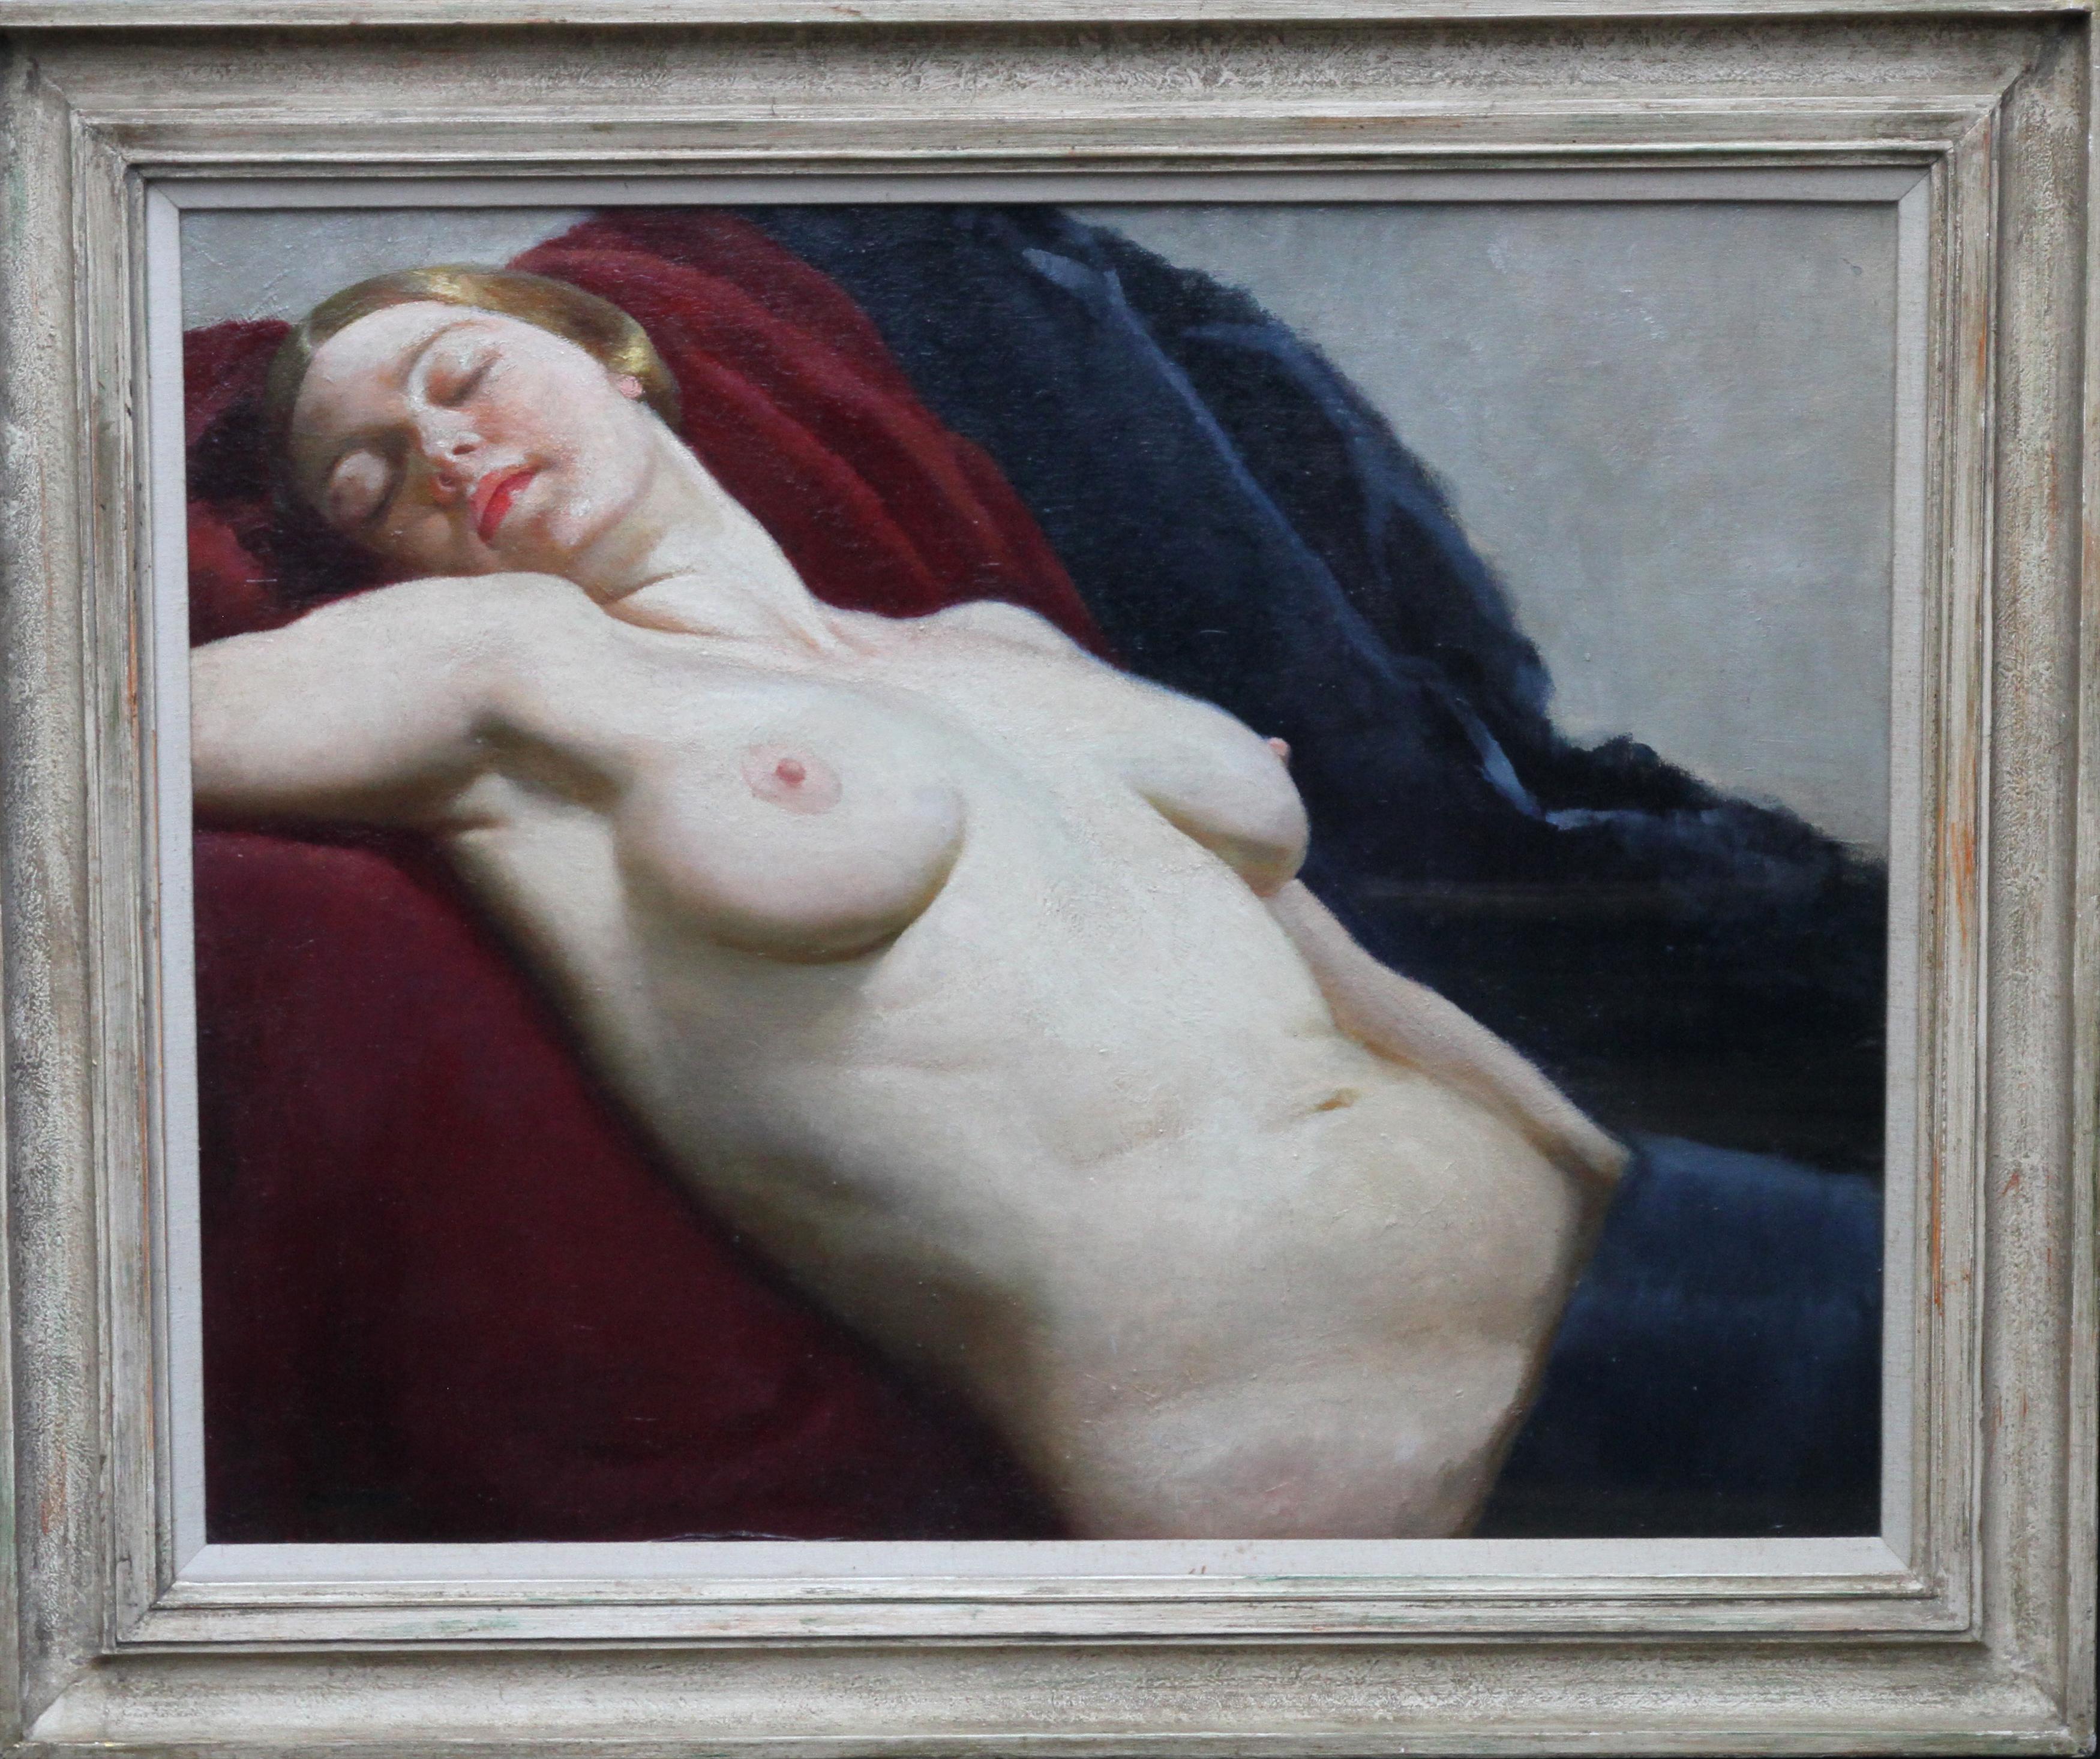 Desnudo recostado - Retrato femenino Art Decó británico años 30 pintura al óleo artista femenina